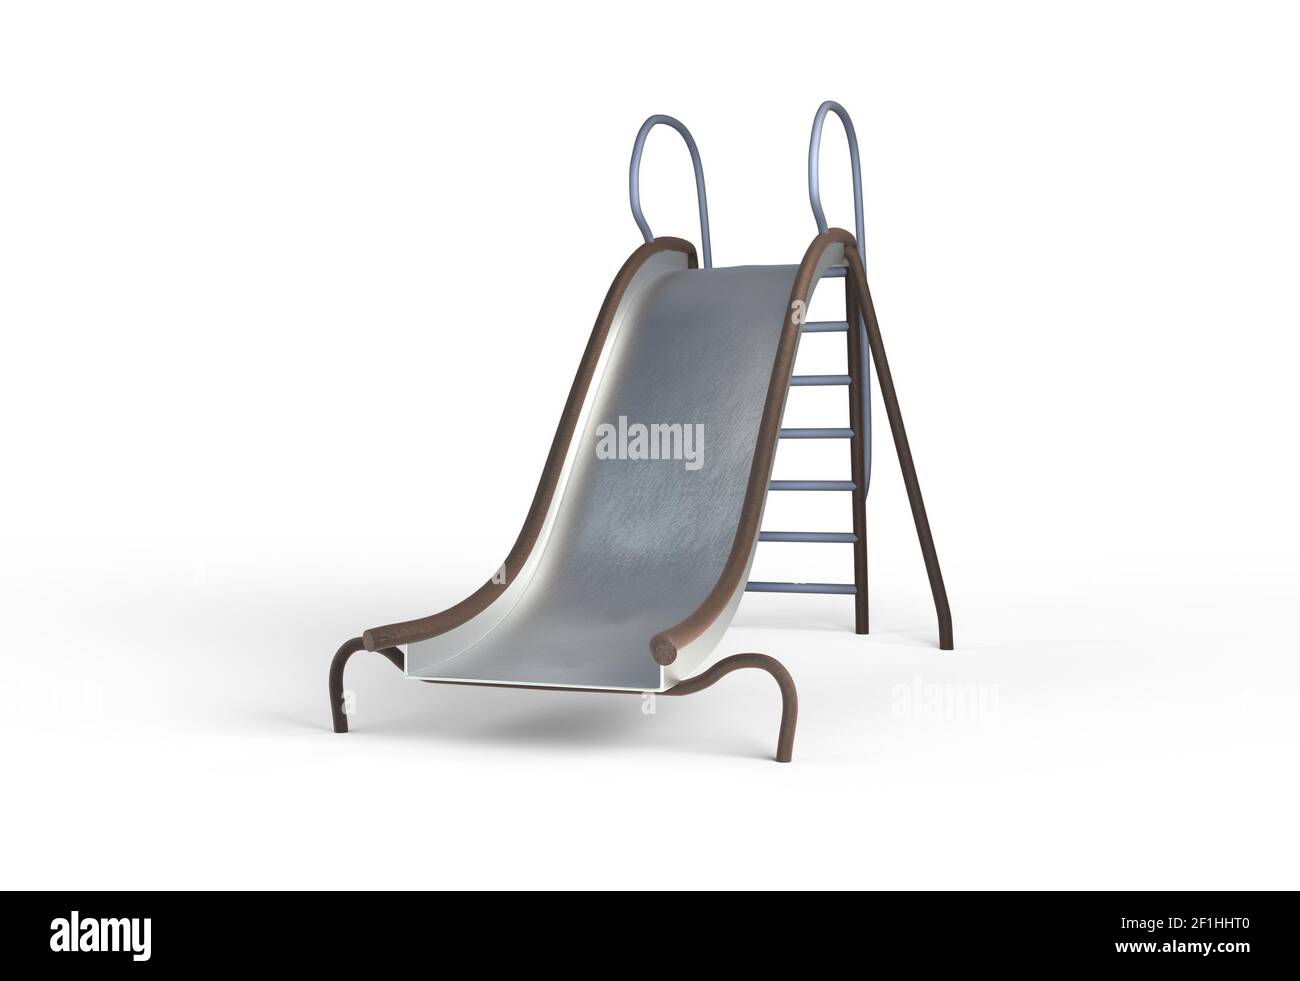 Metal slide playground for children 3d illustration Stock Photo